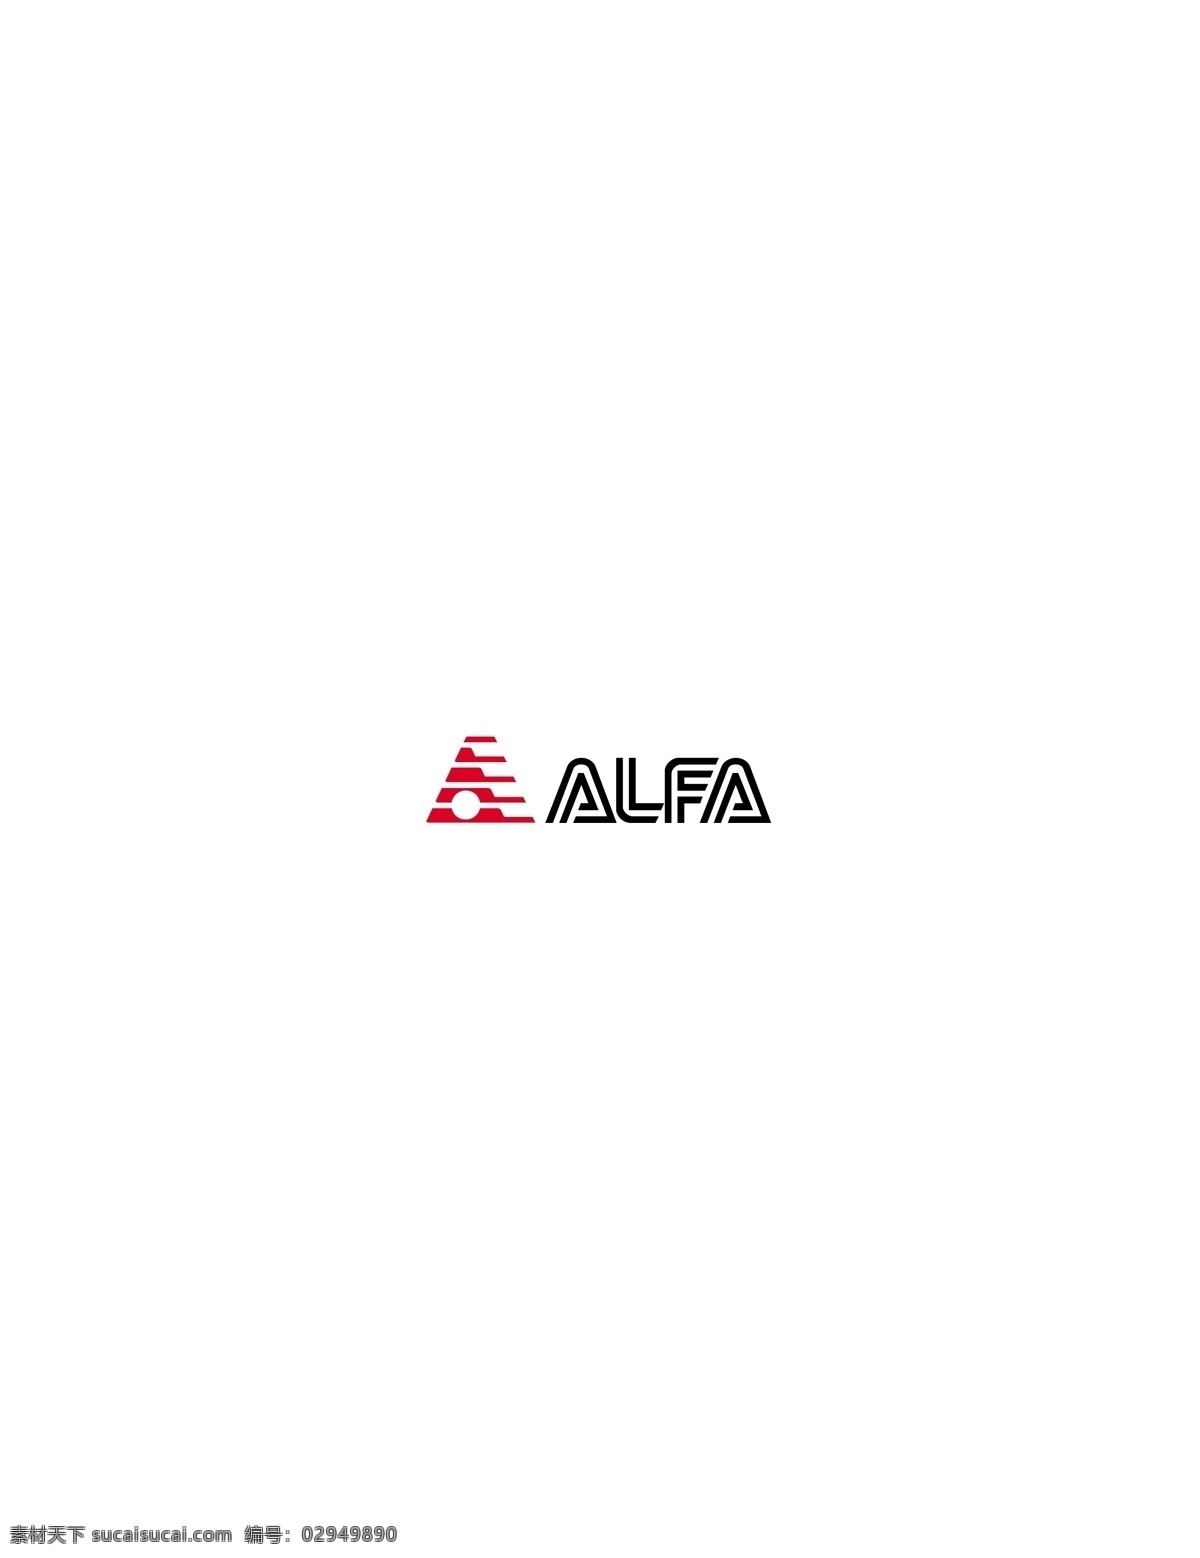 alfa logo 设计欣赏 标志设计 欣赏 矢量下载 网页矢量 商业矢量 logo大全 红色